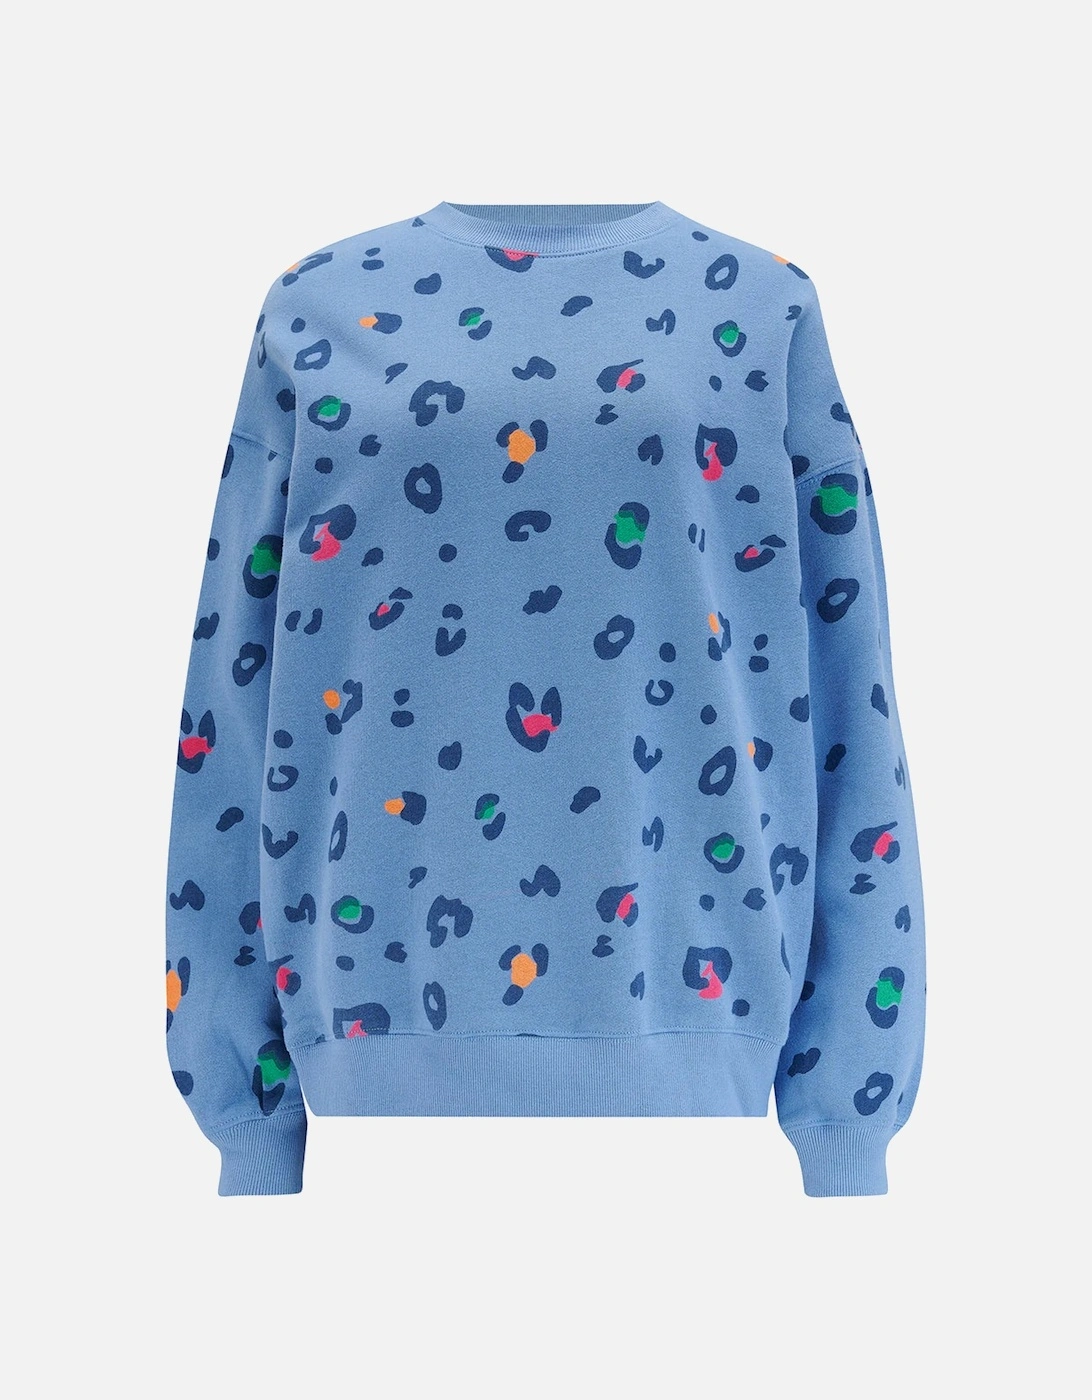 Eadie sweatshirt in colour pop leopard print, 5 of 4